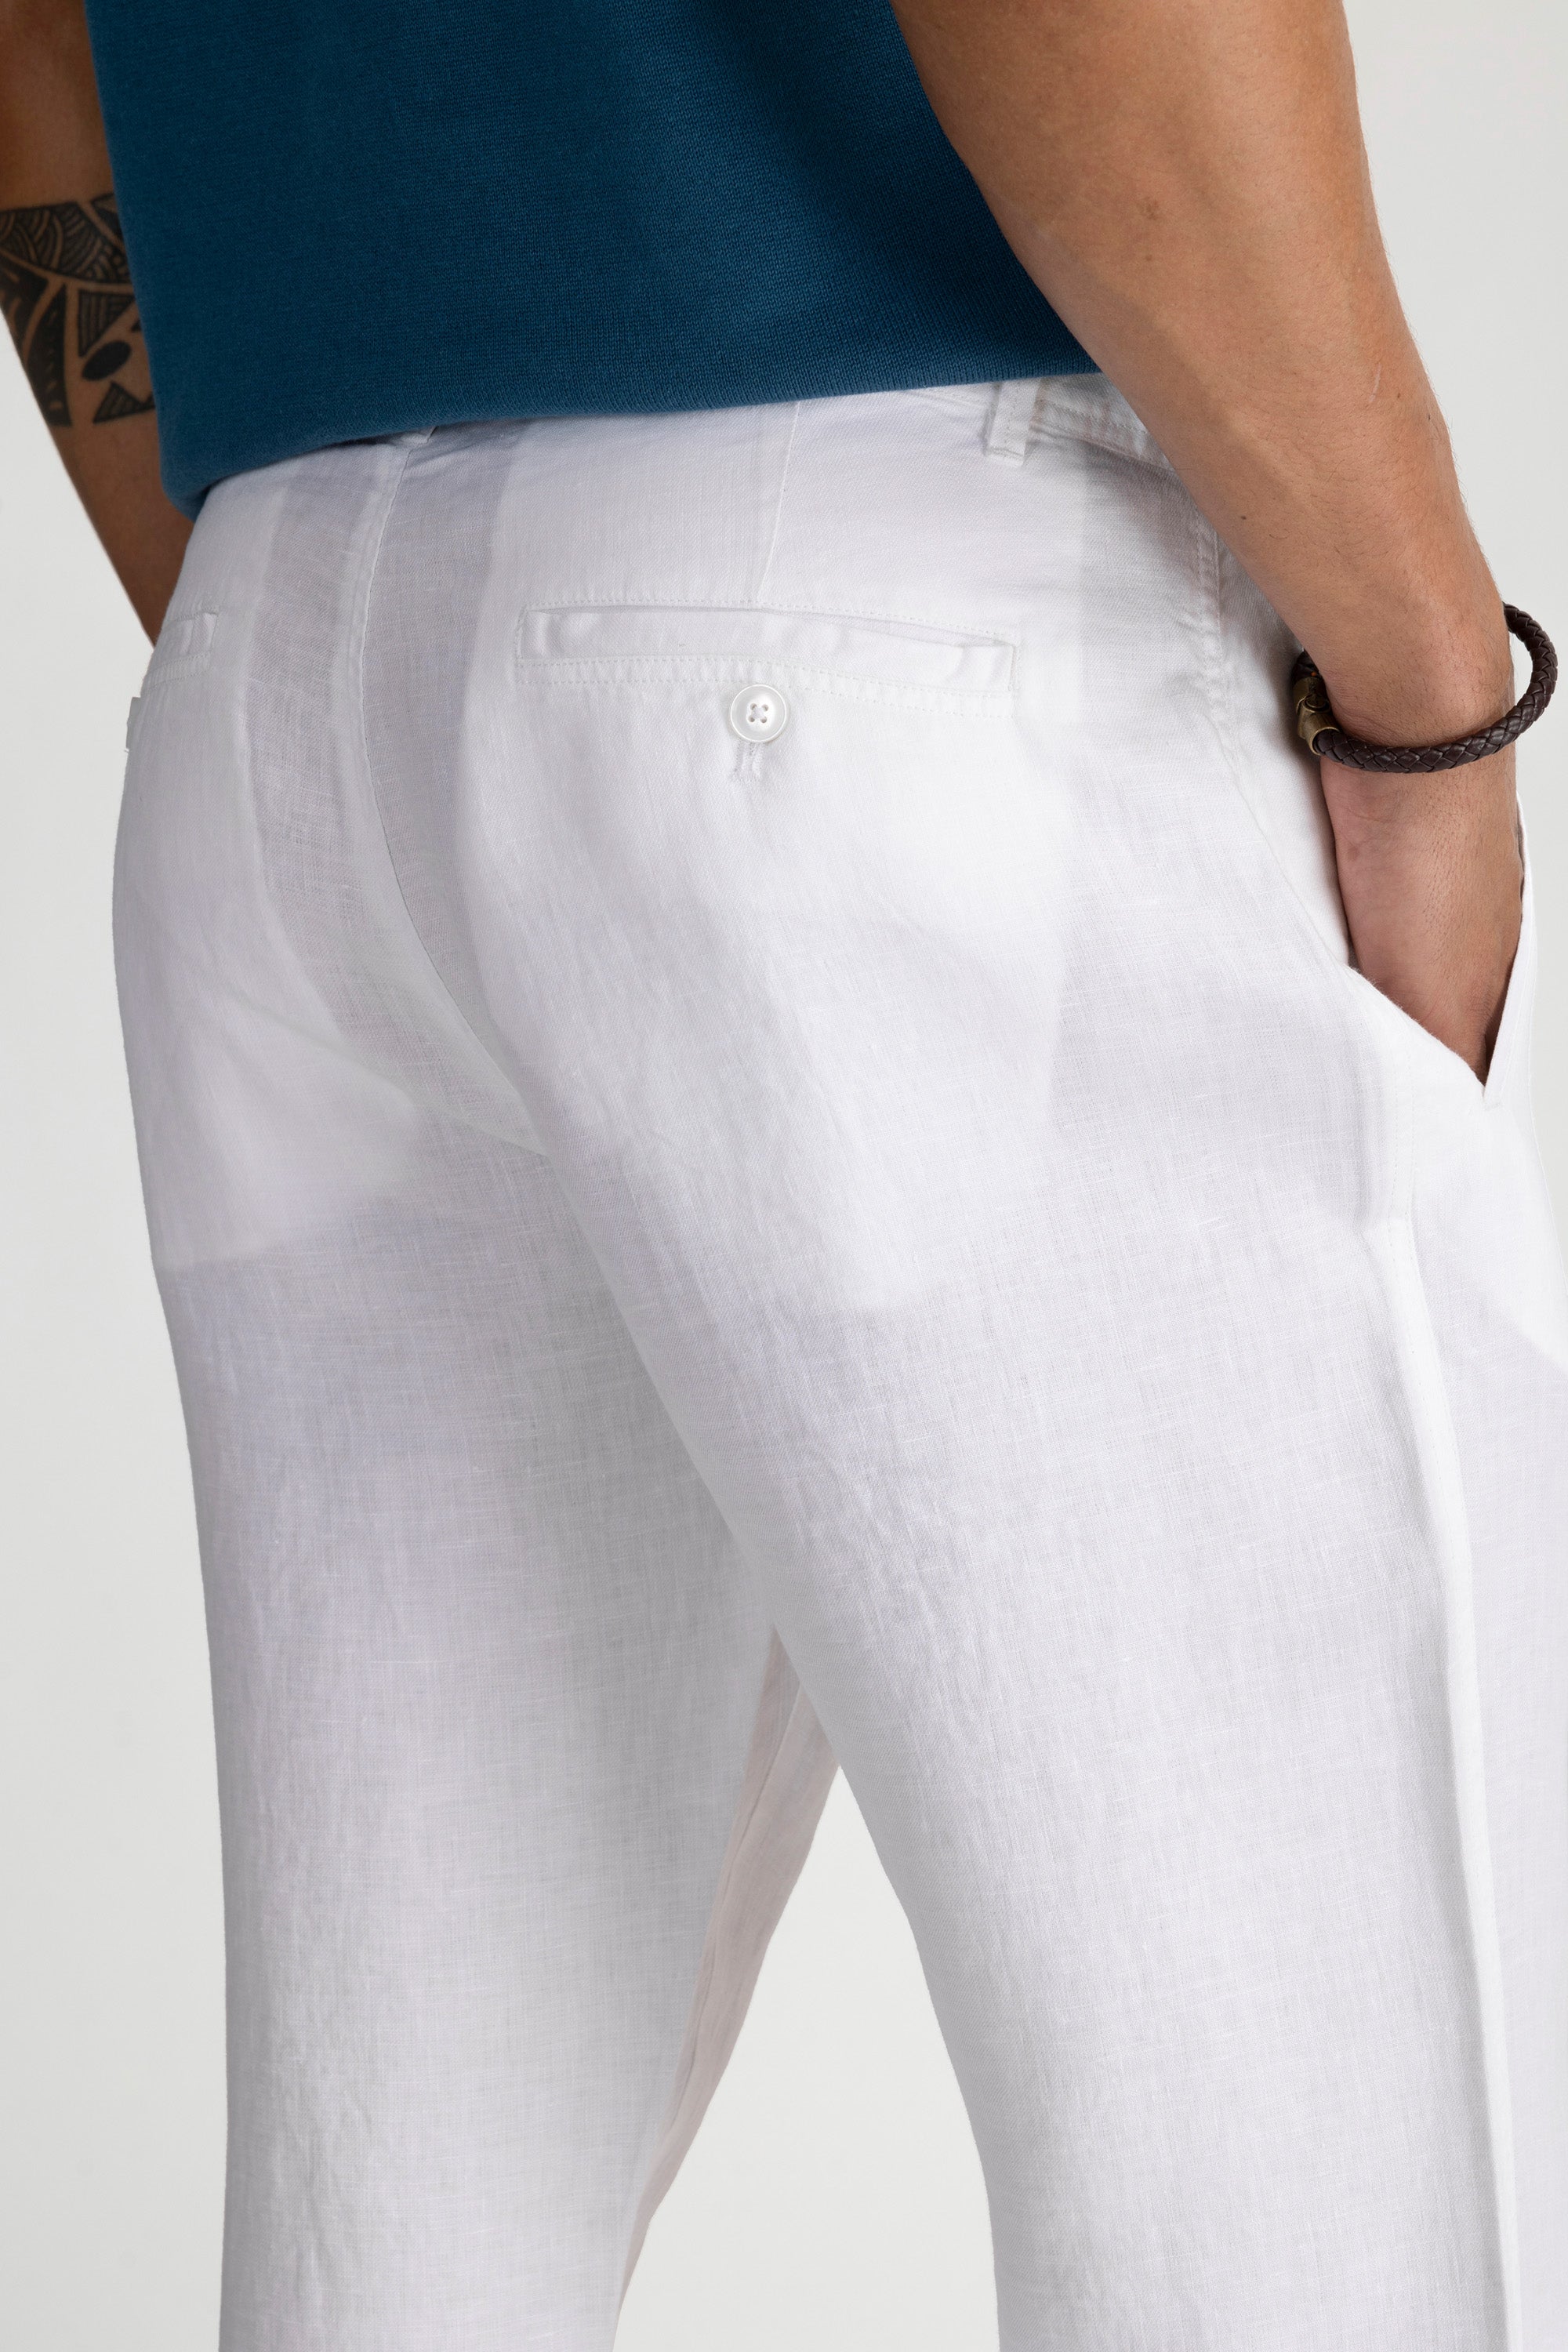 Negombo Linen Pants